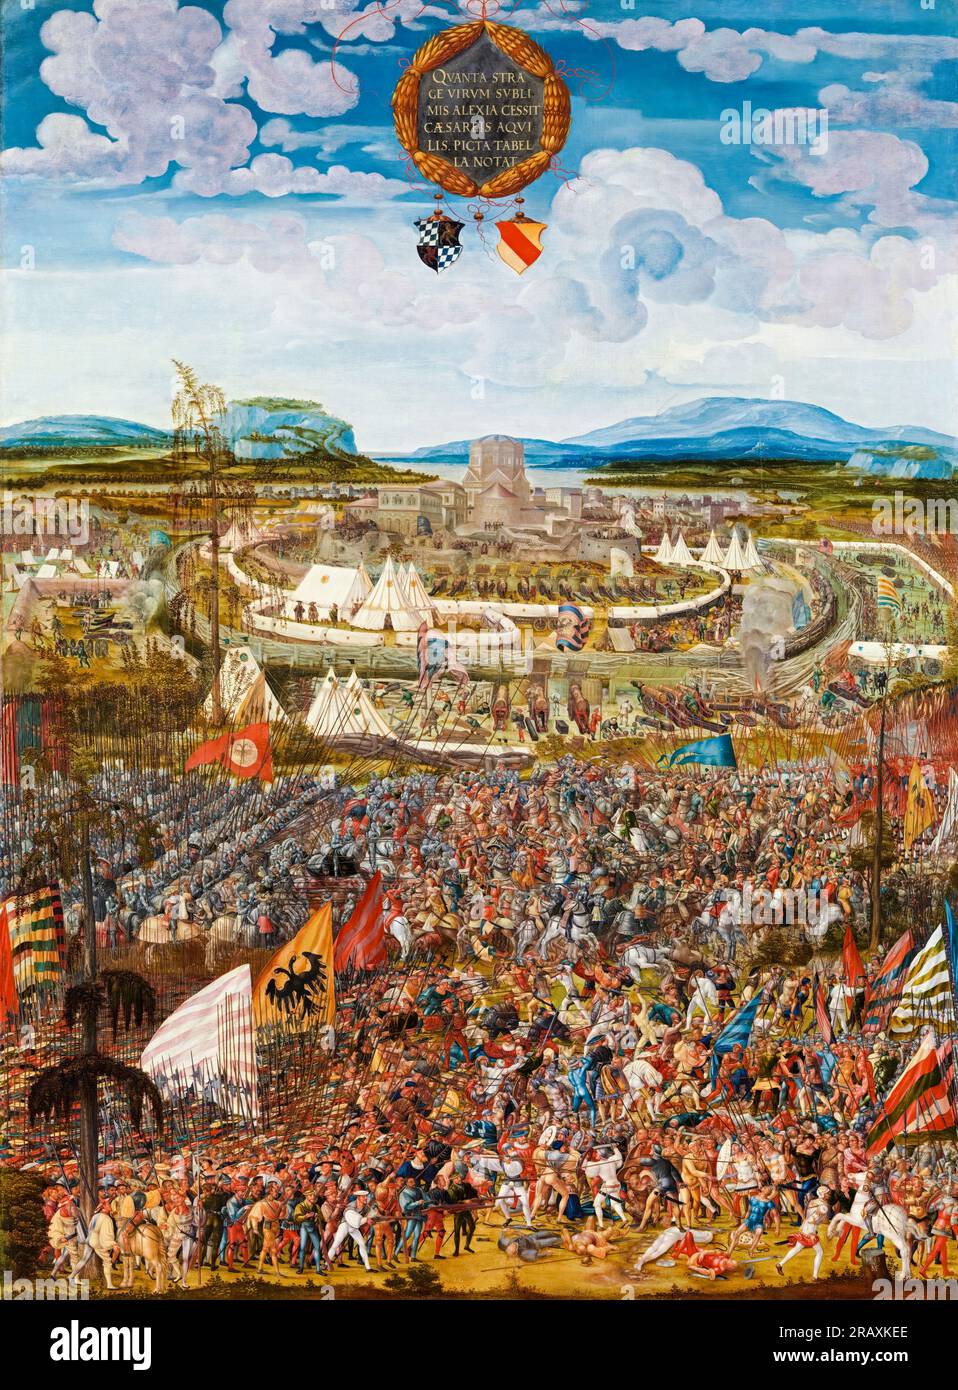 Melchior Feselen, die Belagerung der Stadt Alesien (Schlacht von Alesien), Ölgemälde auf Holz, 1533 Stockfoto